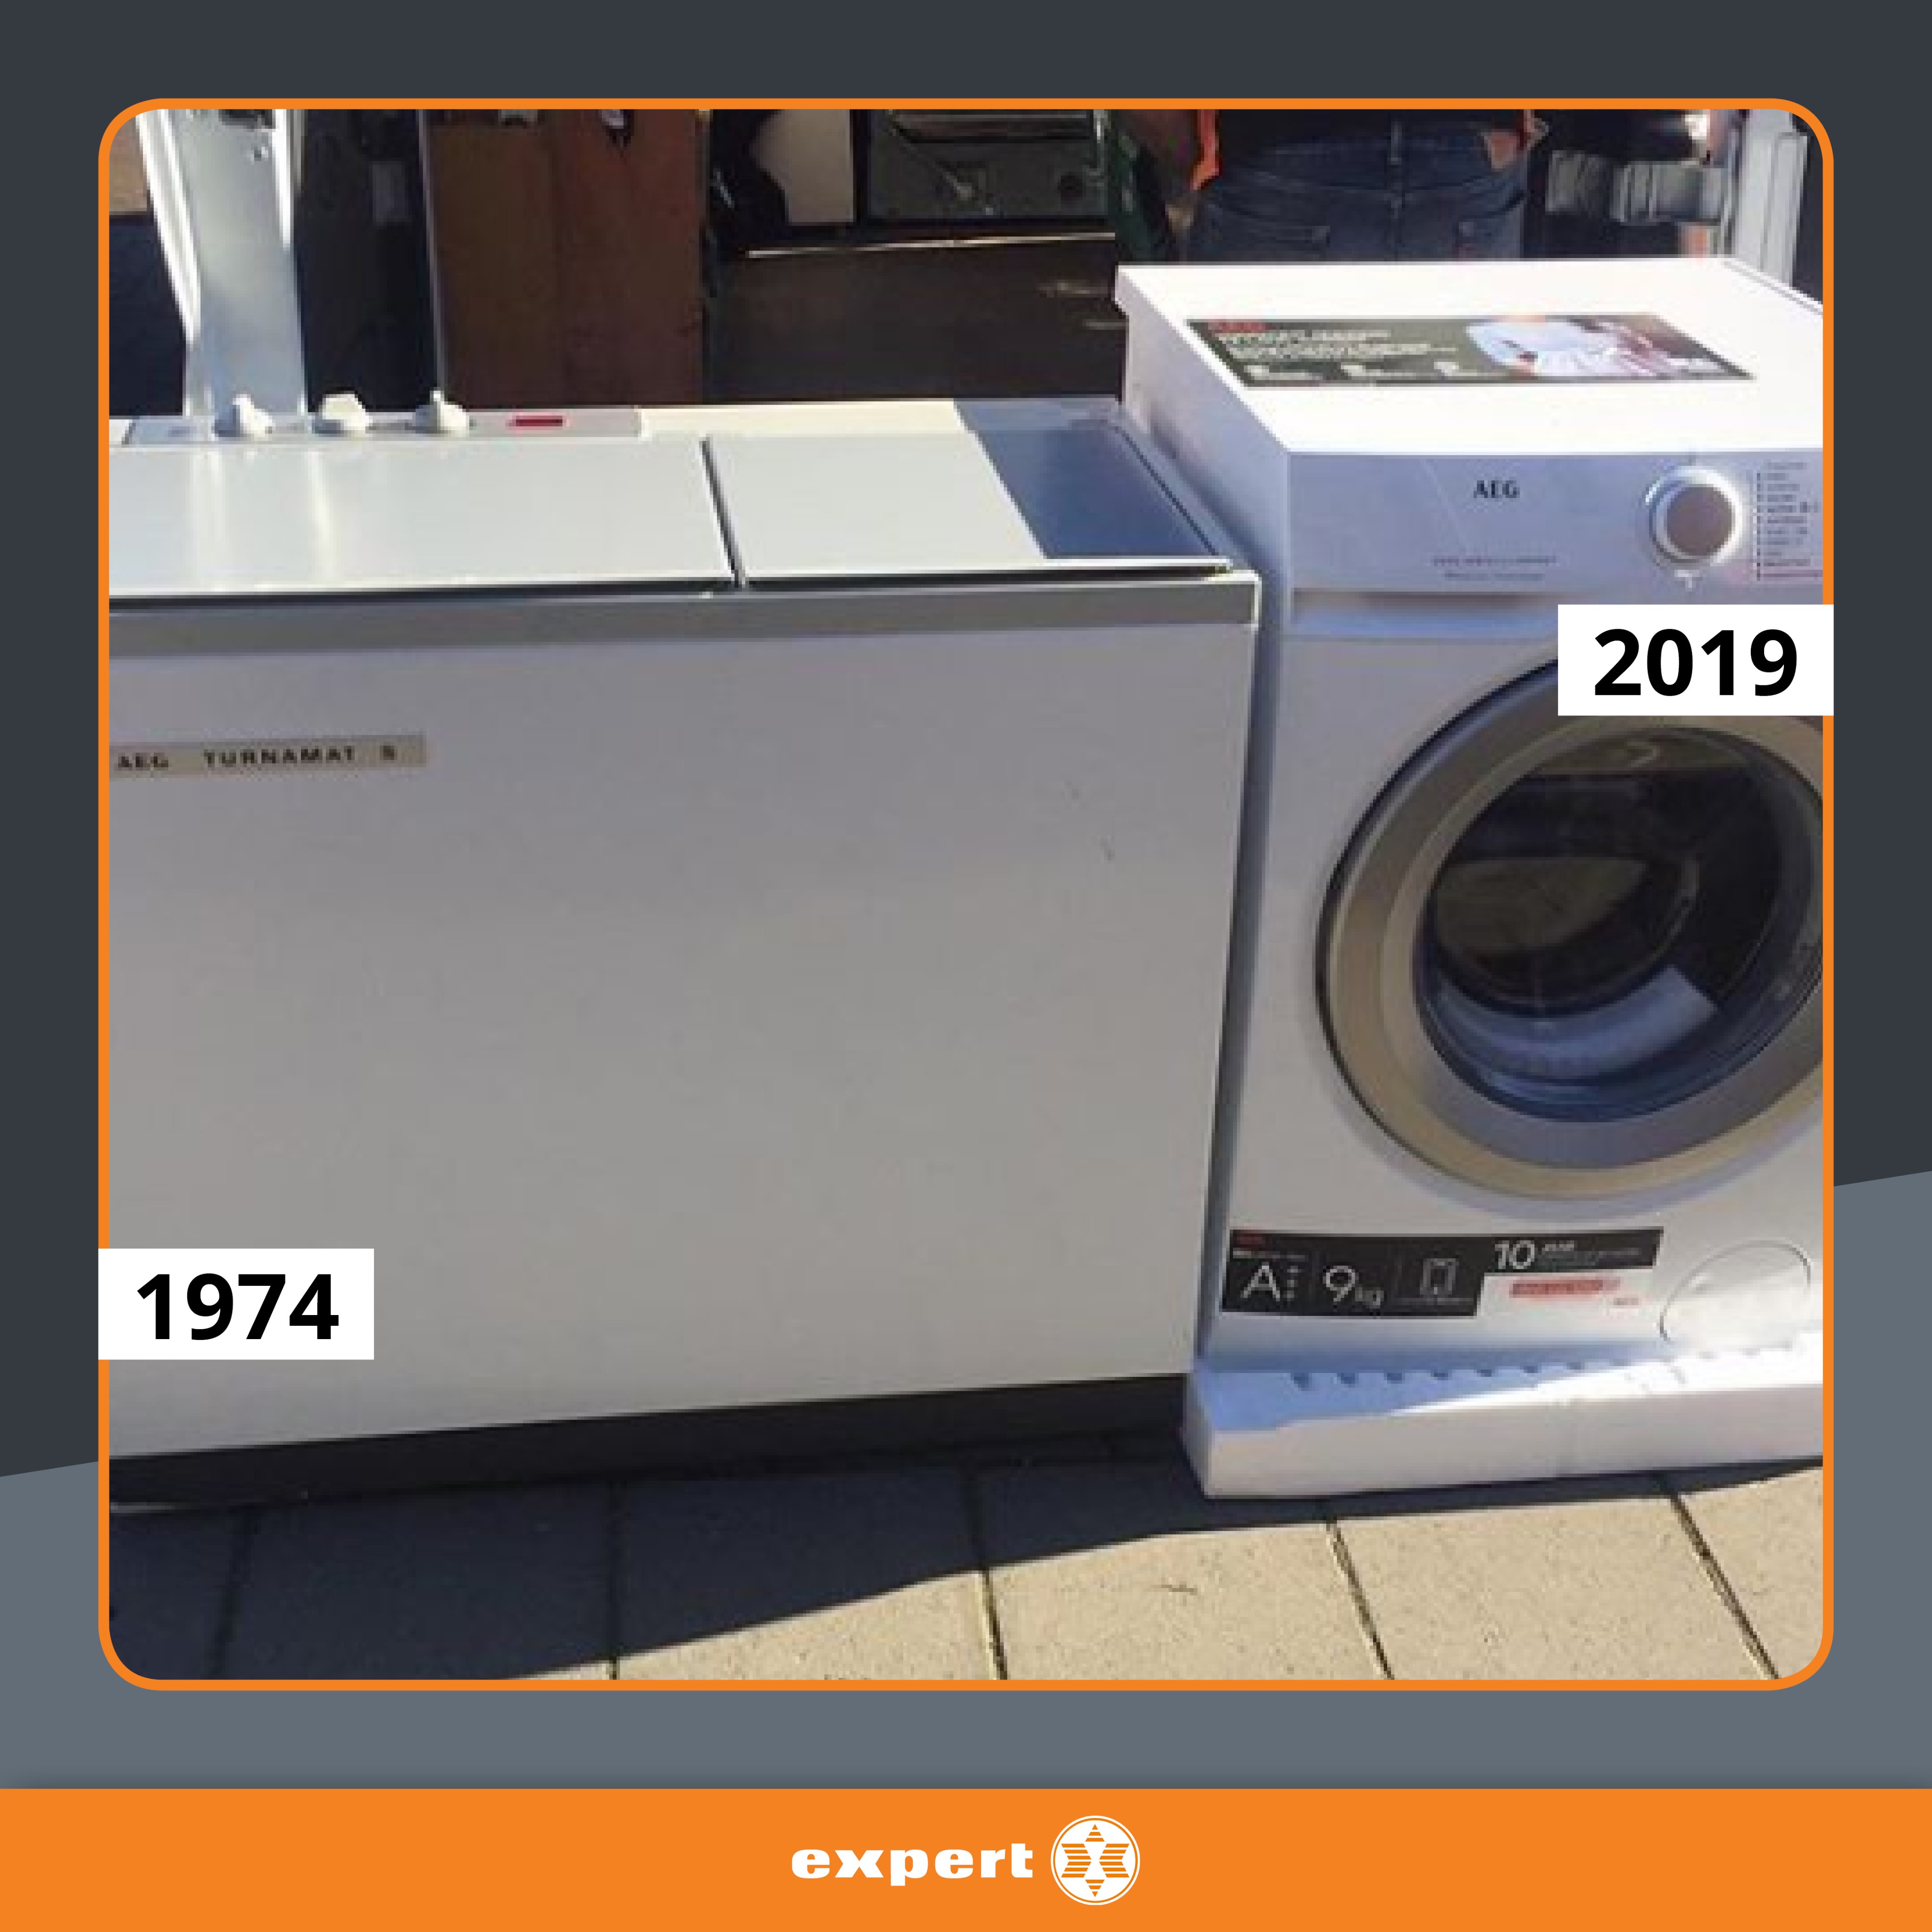 Versnellen Inademen Noord Expert.nl on Twitter: "Een trouwe klant van Expert deed 45 jaar met zijn AEG  wasmachine! Expert Nijkerk installeerde dit jaar een nieuwe wasmachine,  voor jarenlang wasplezier 😀 https://t.co/AU22wCax6m" / Twitter